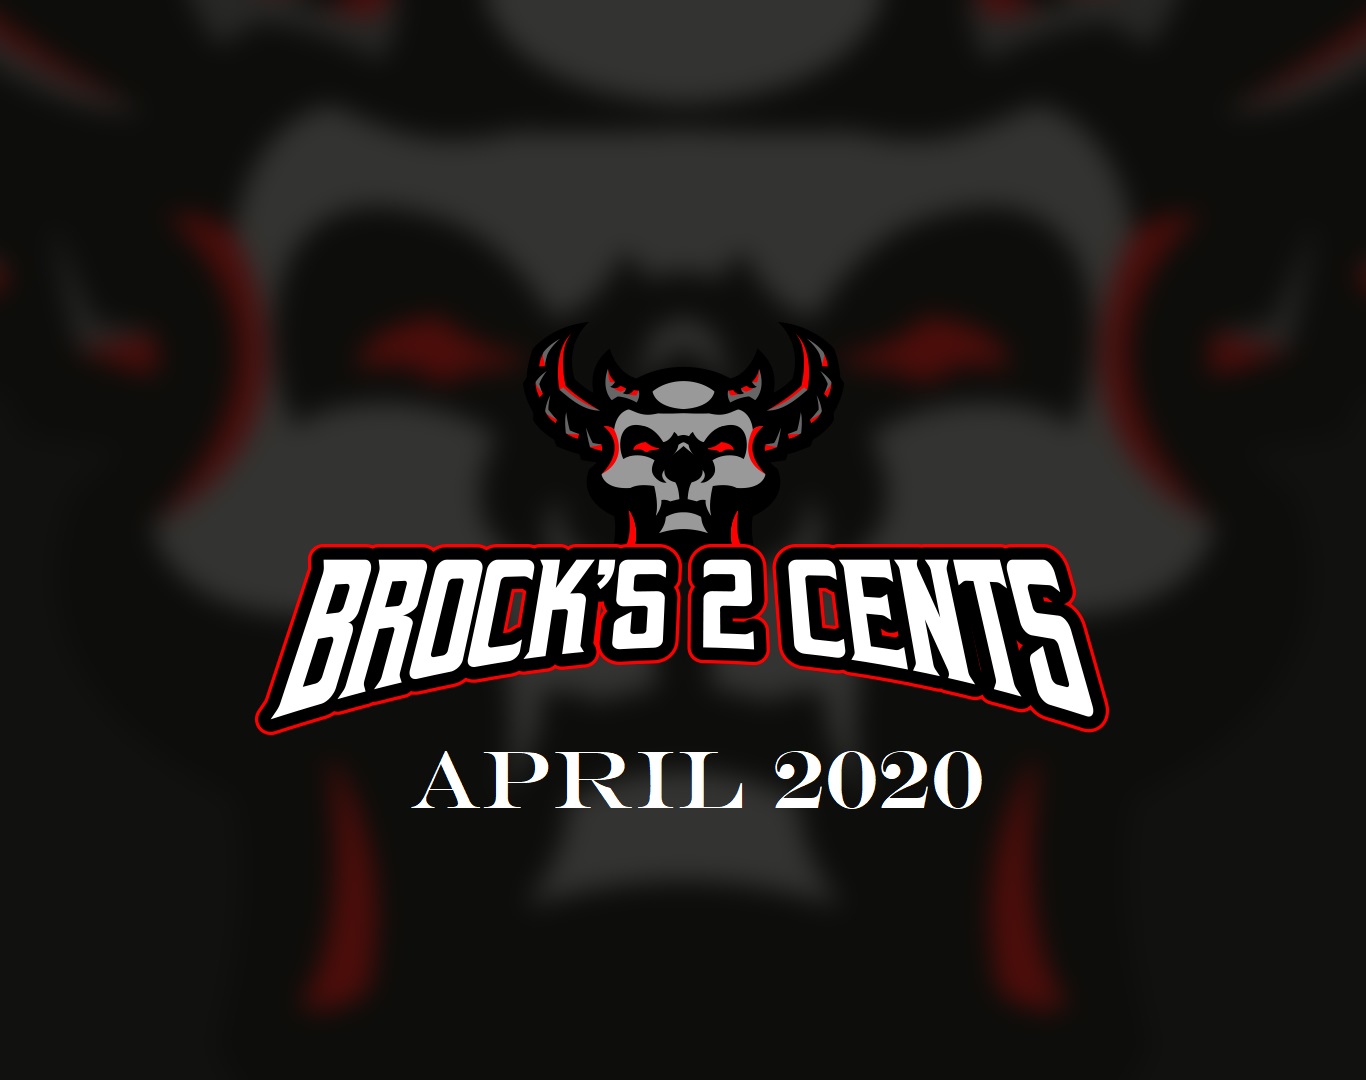 Brock's 2 Cents - April 2020